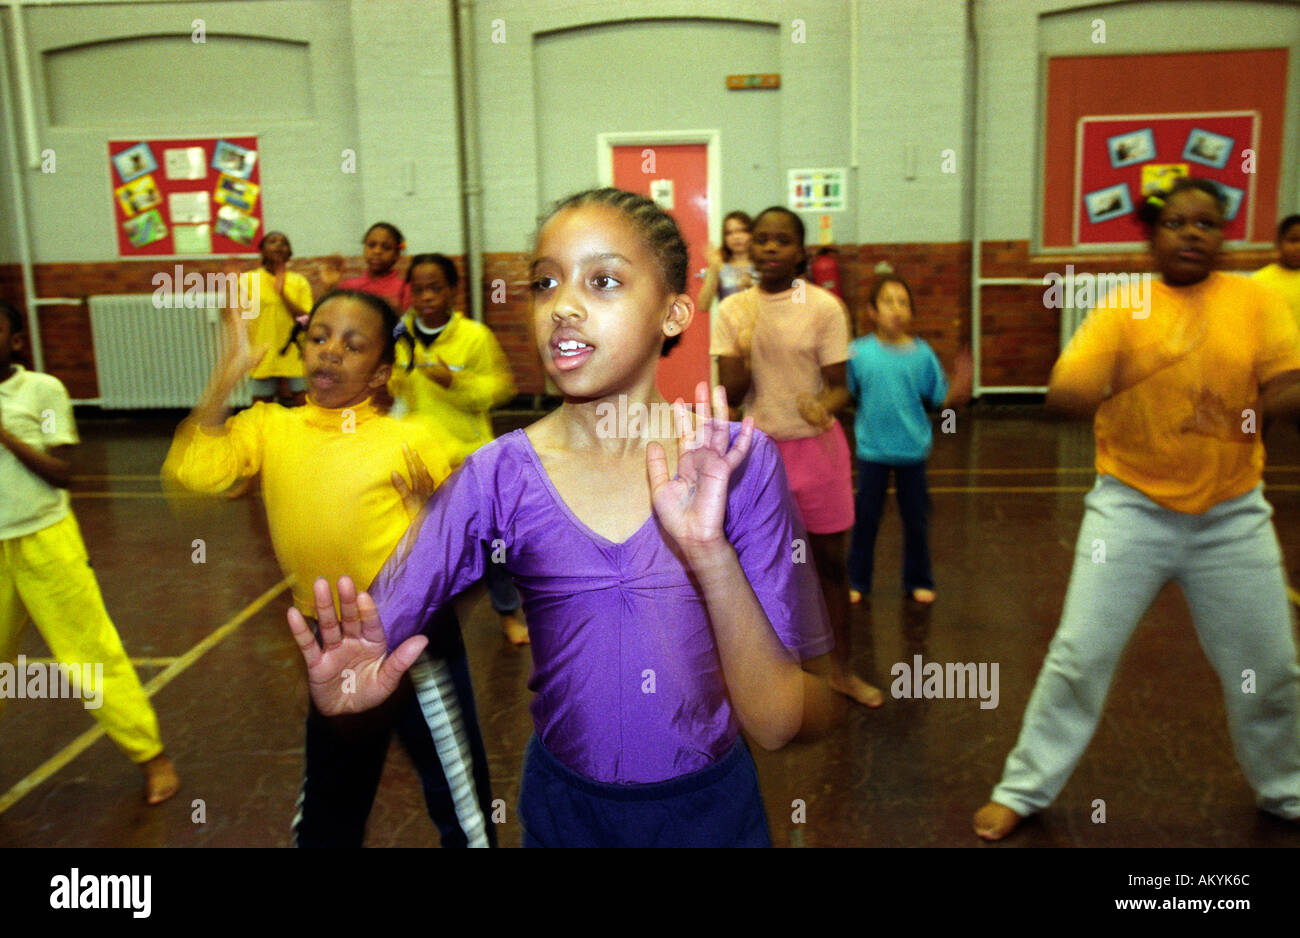 Les jeunes qui participent à un cours de danse, Southwark, London, UK. Banque D'Images